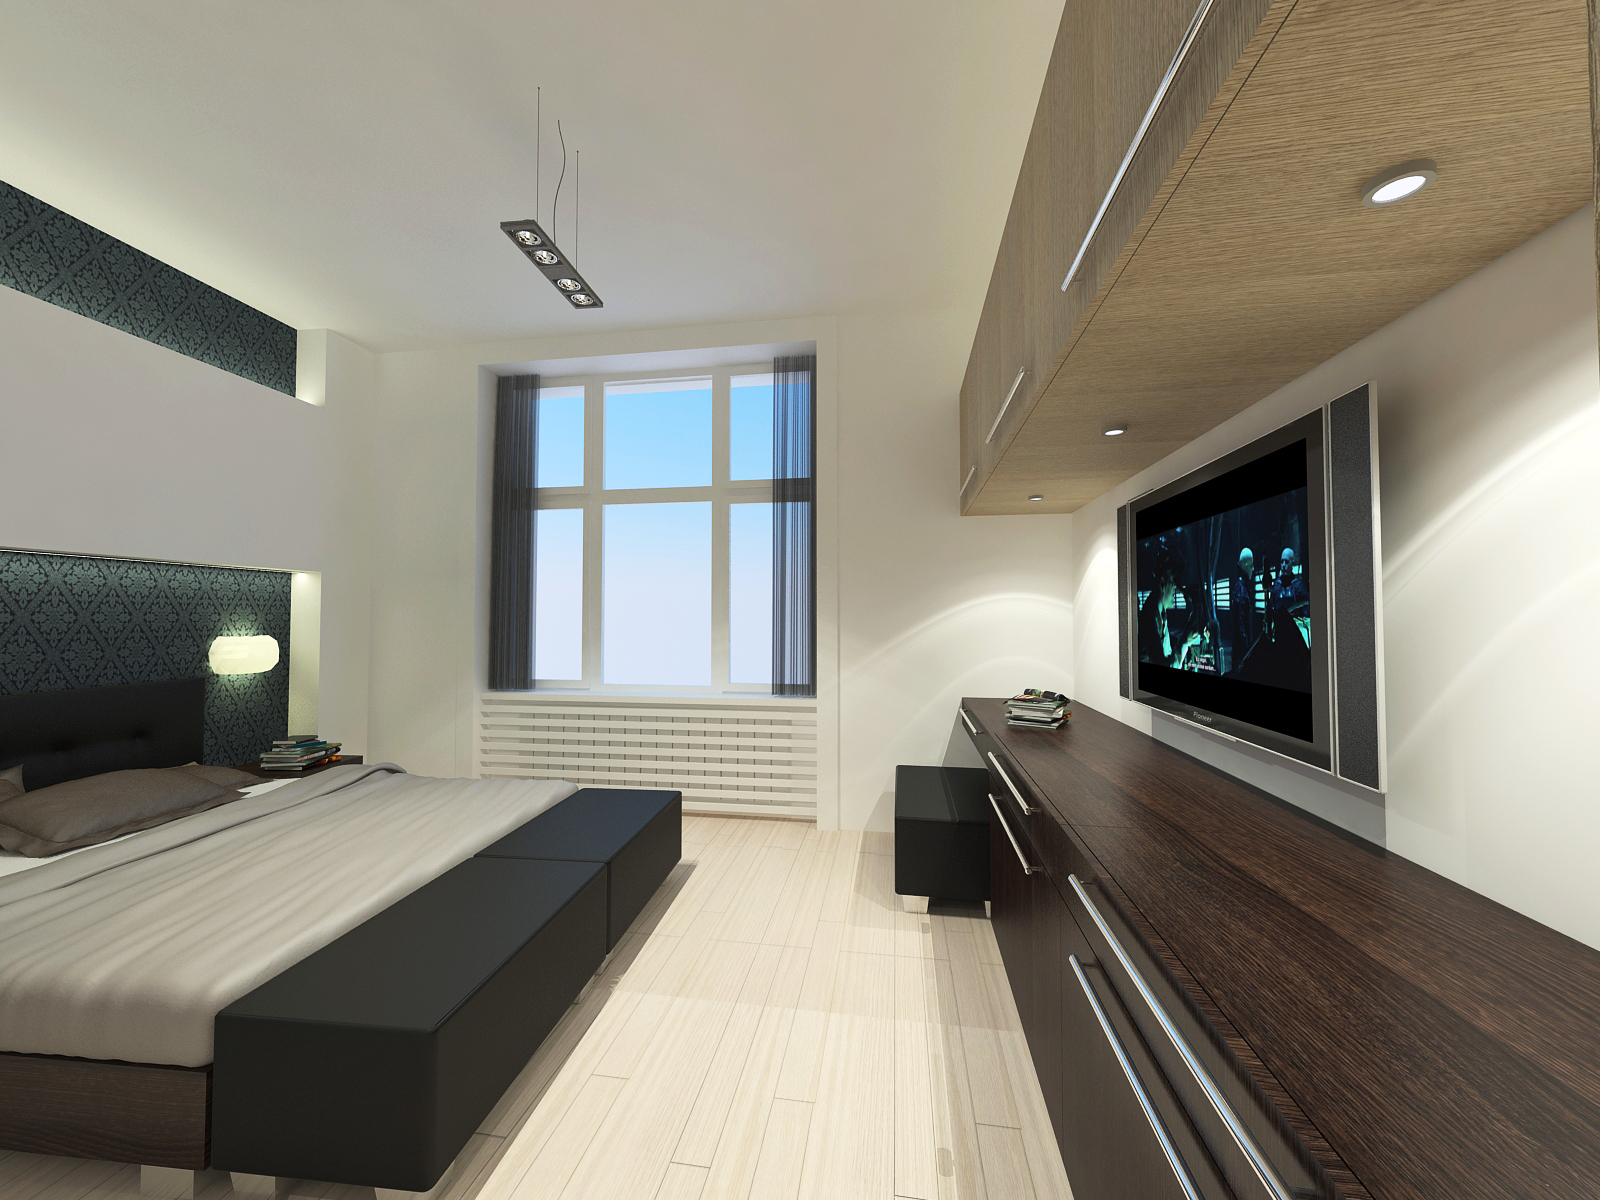 Hálószoba - látványterv / Bedroom - architectural visualization